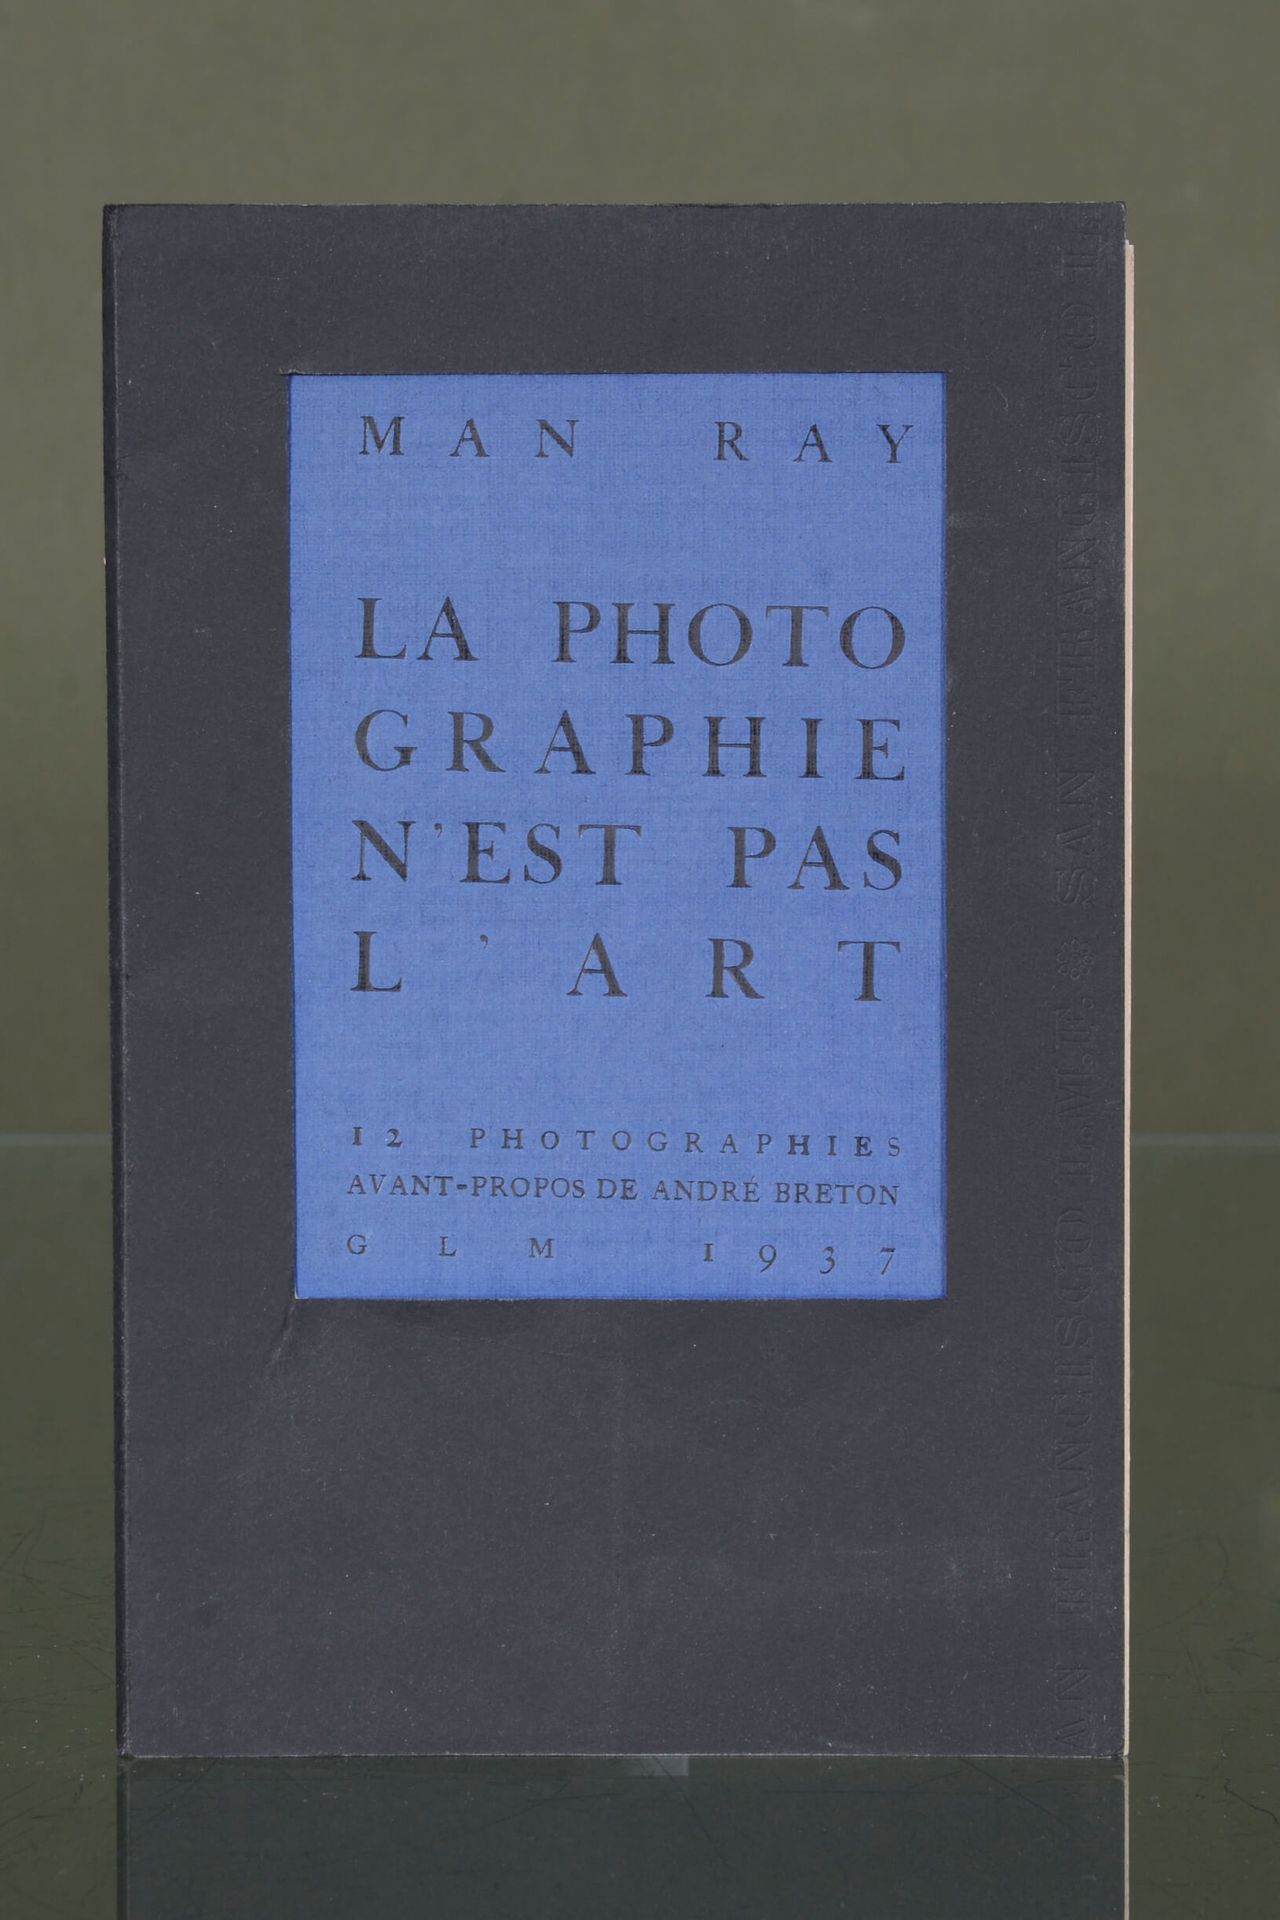 MAN RAY (1890-1976) La Photographie N'est Pas L'Art  [Paris], G.L.M., 1937

In-8&hellip;